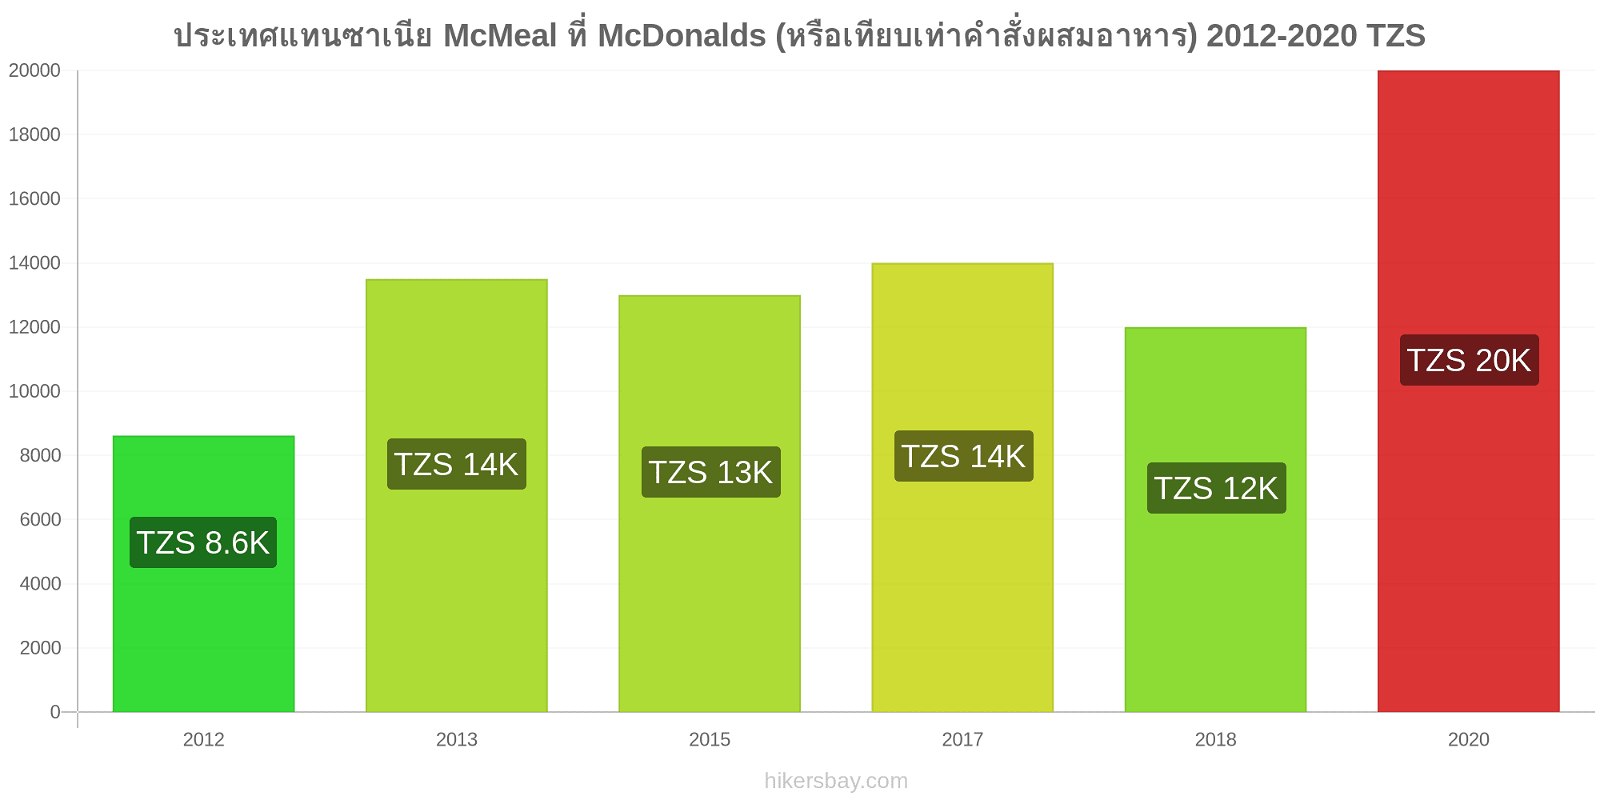 ประเทศแทนซาเนีย การเปลี่ยนแปลงราคา McMeal ที่ McDonalds (หรือเทียบเท่าคำสั่งผสมอาหาร) hikersbay.com